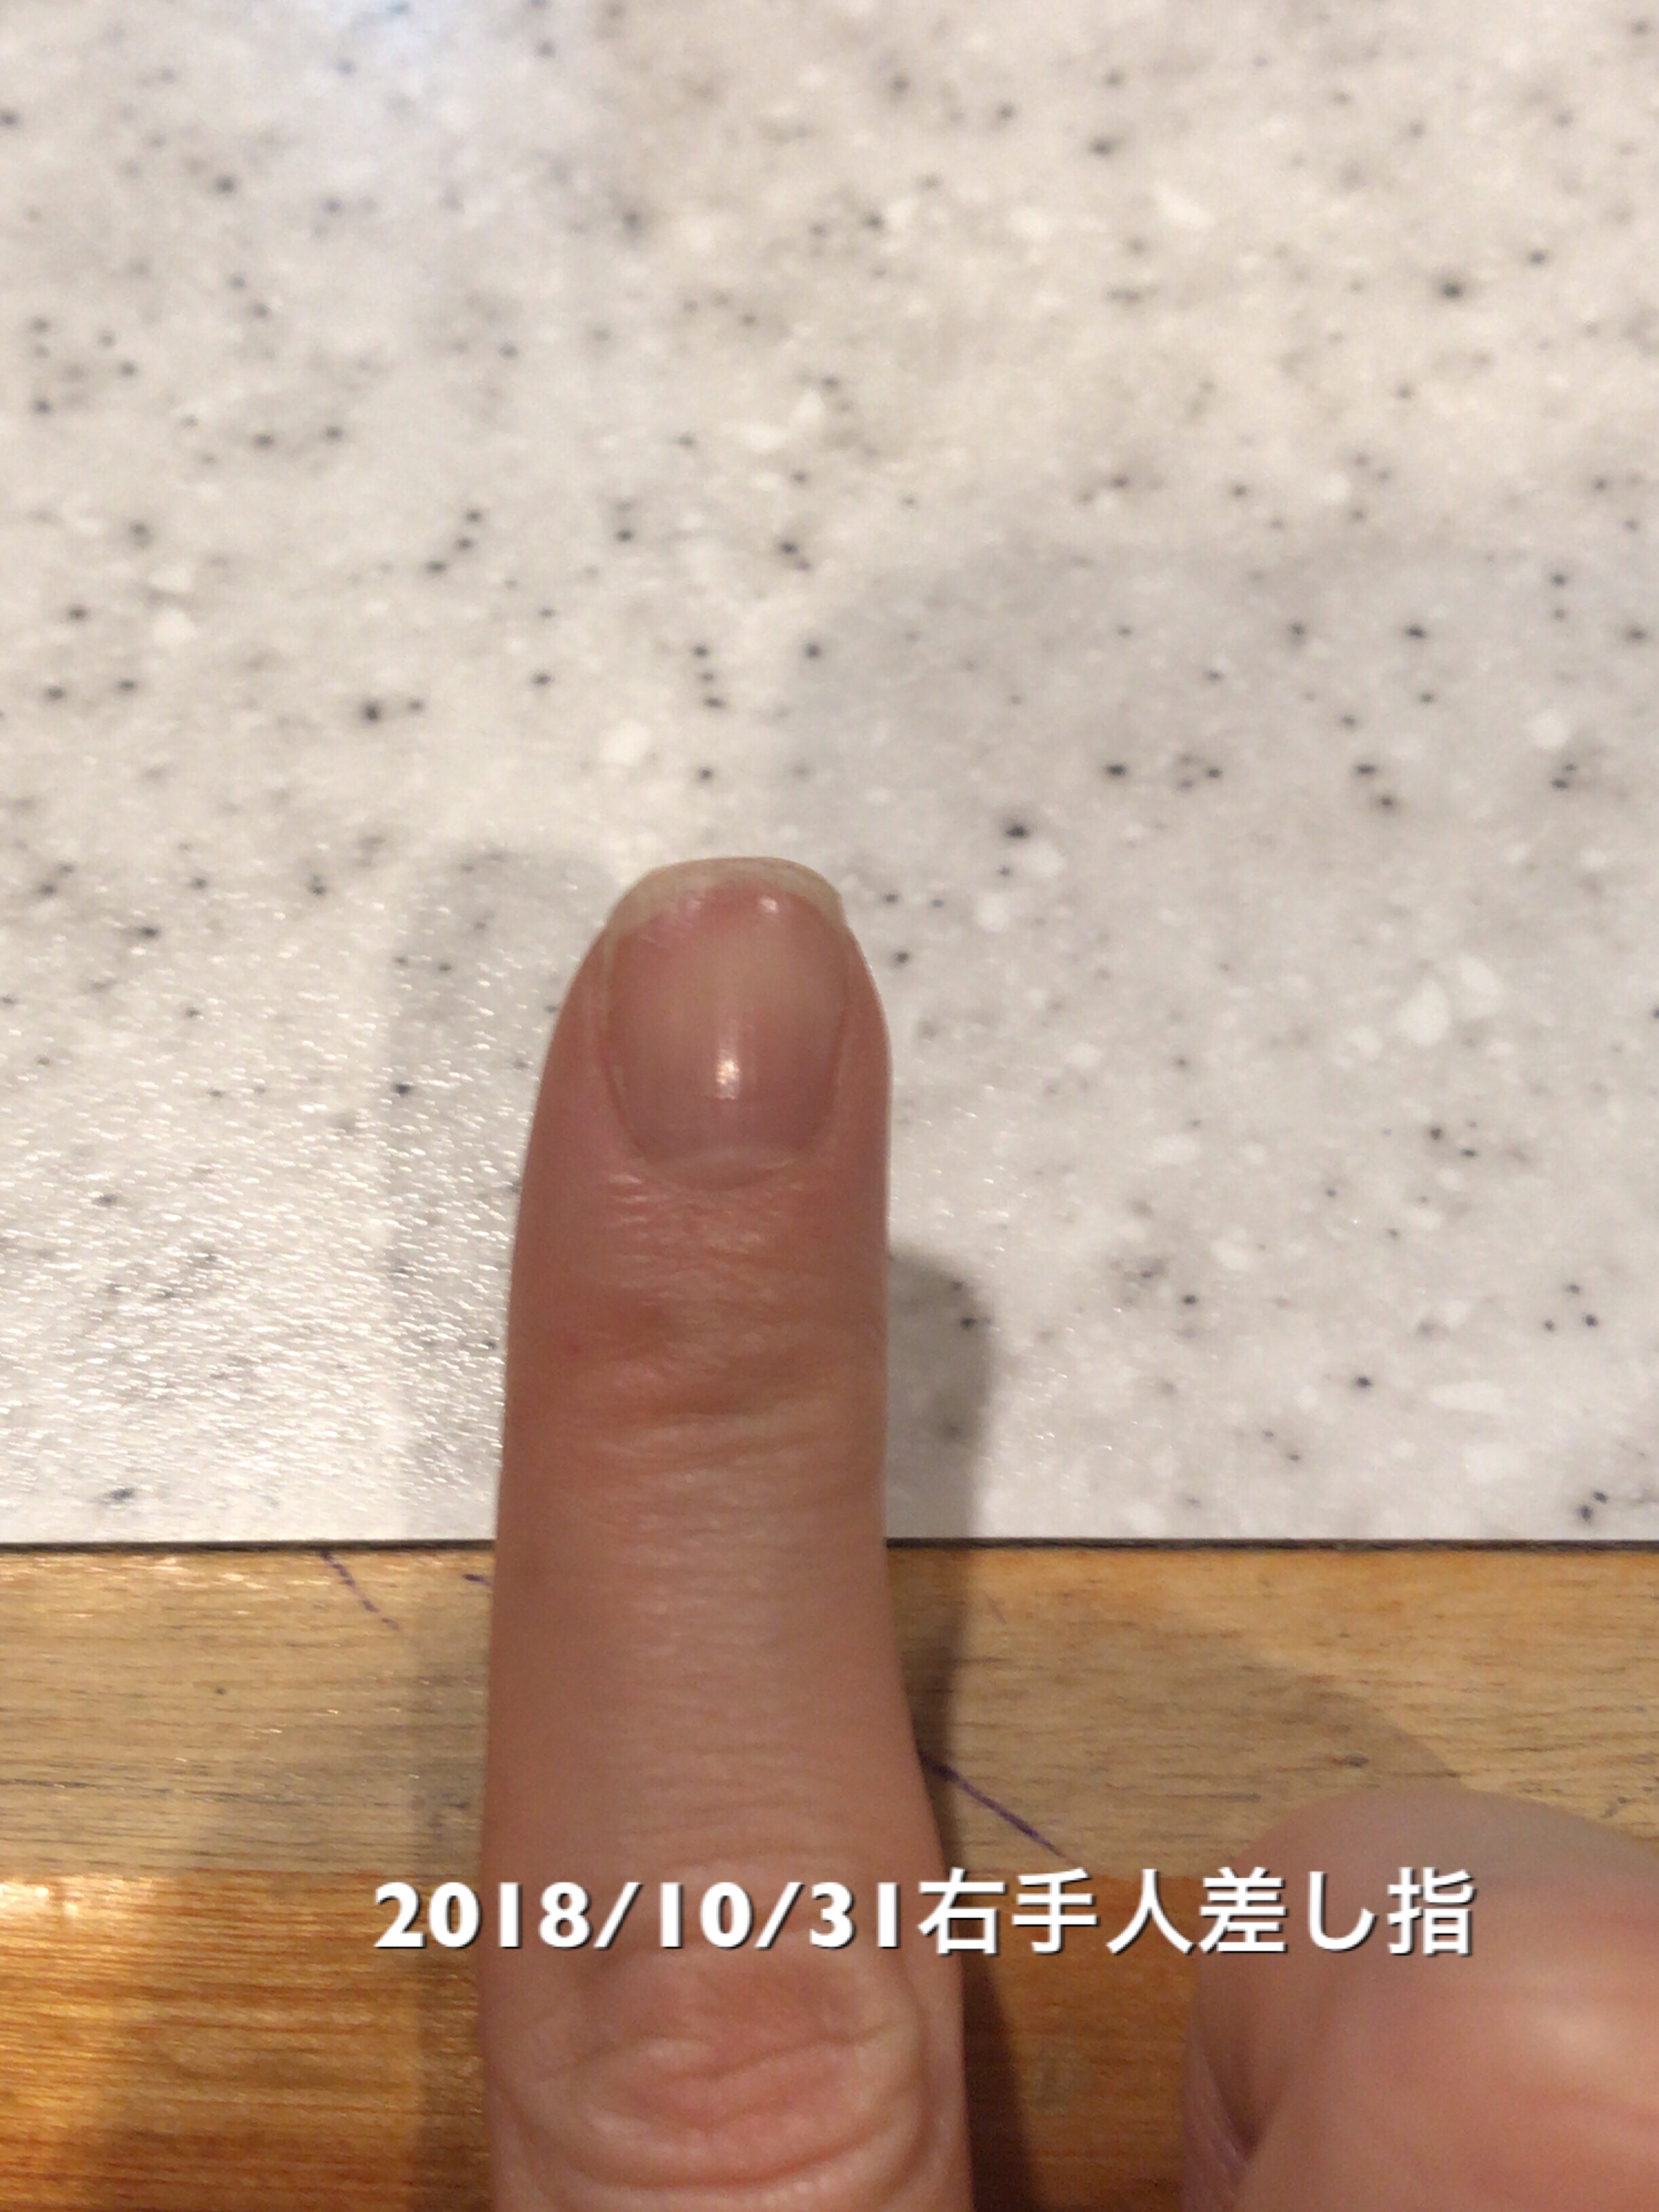 右手人差し指は、10日前と比べてネイルベッドの全長が1mm成長。よく使うのですぐ先が割れたりトラブル続きですが、めげずに頑張りたいところです。